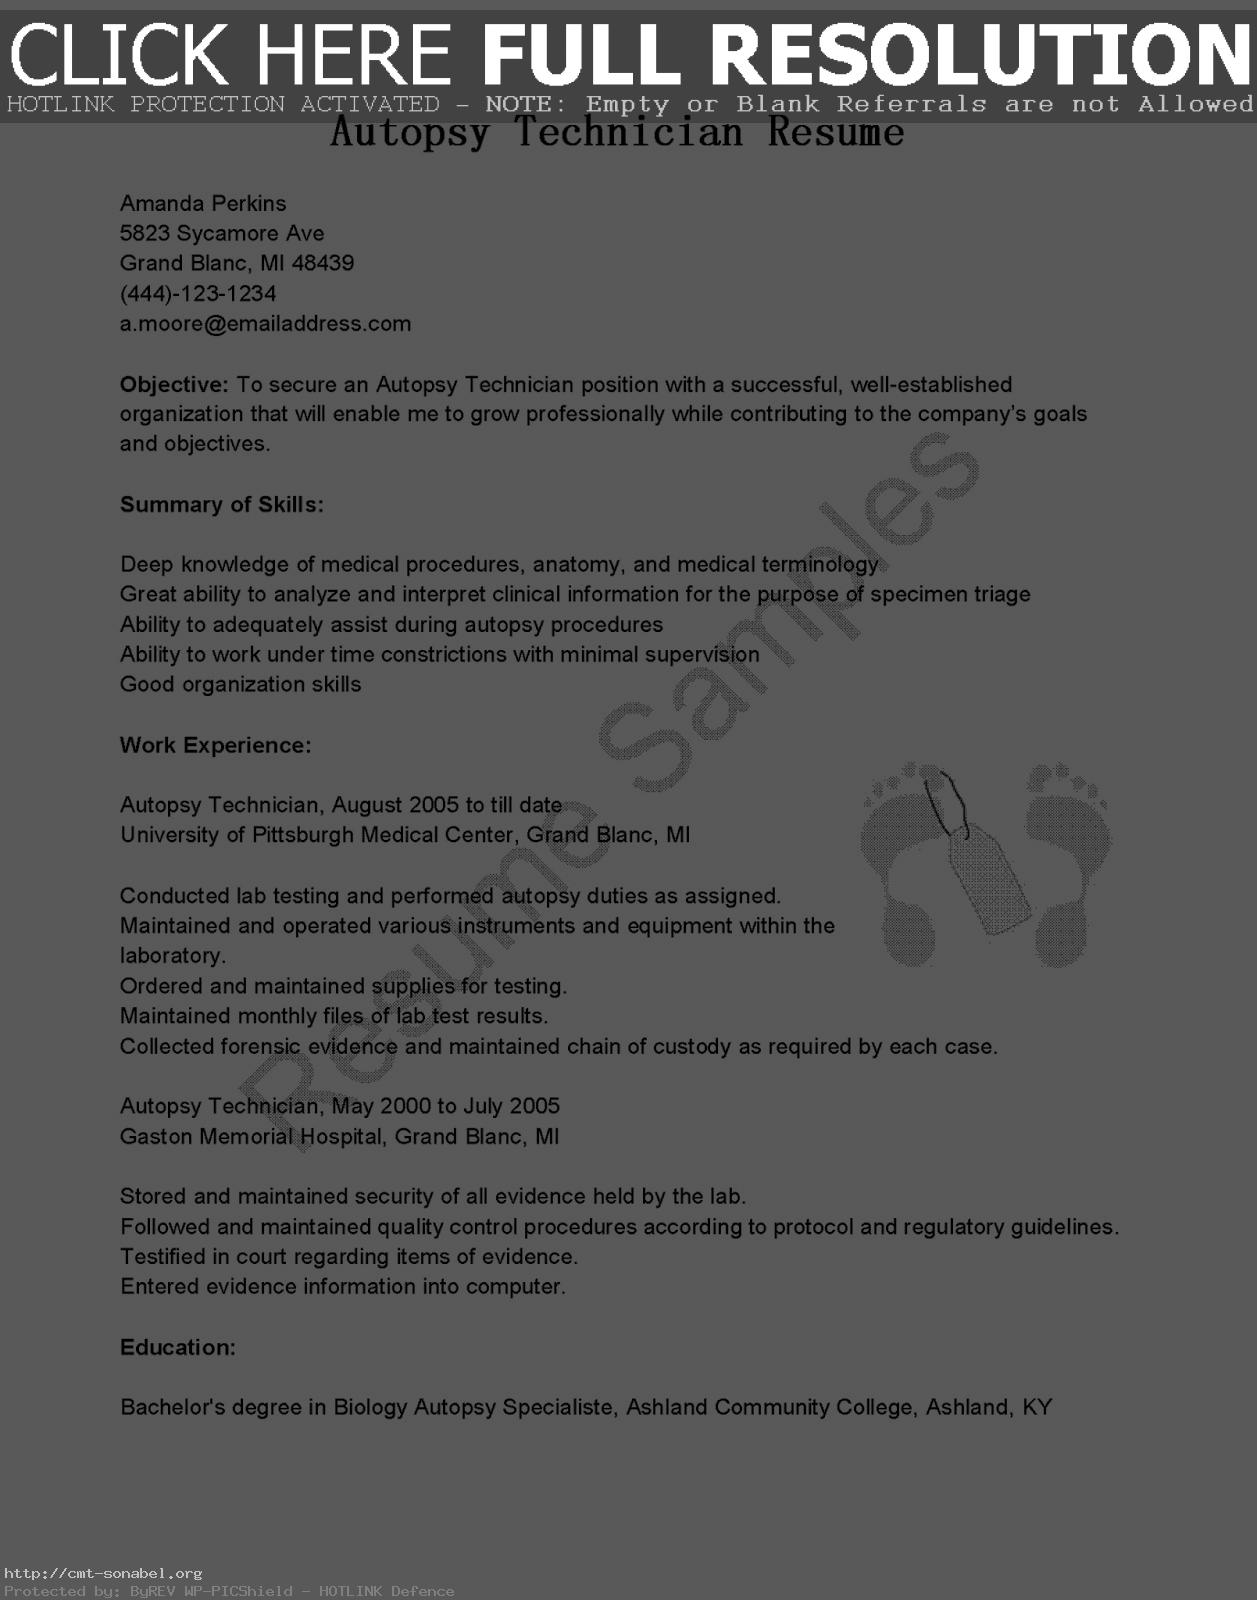 Barback Resume Sample 2019 Sample Resume For Barback 2020 barback resume sample barback resume example sample resume for barback barback resume objective example barback resume samples barback resume examples barback resume sample